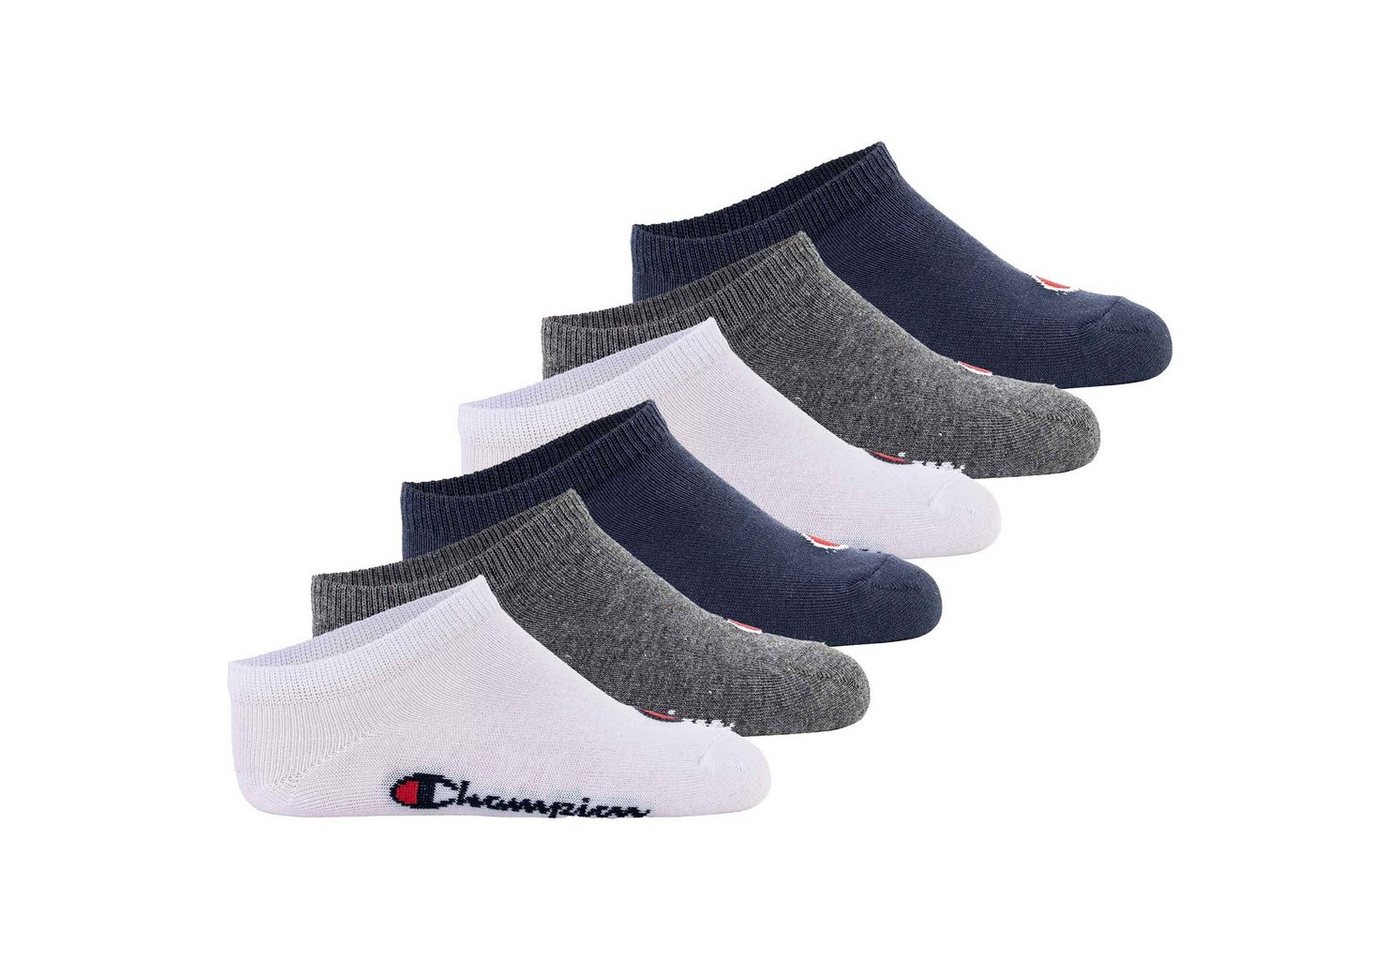 Champion Freizeitsocken Kinder Socken, 6er Pack - Sneaker Socken, Logo von Champion